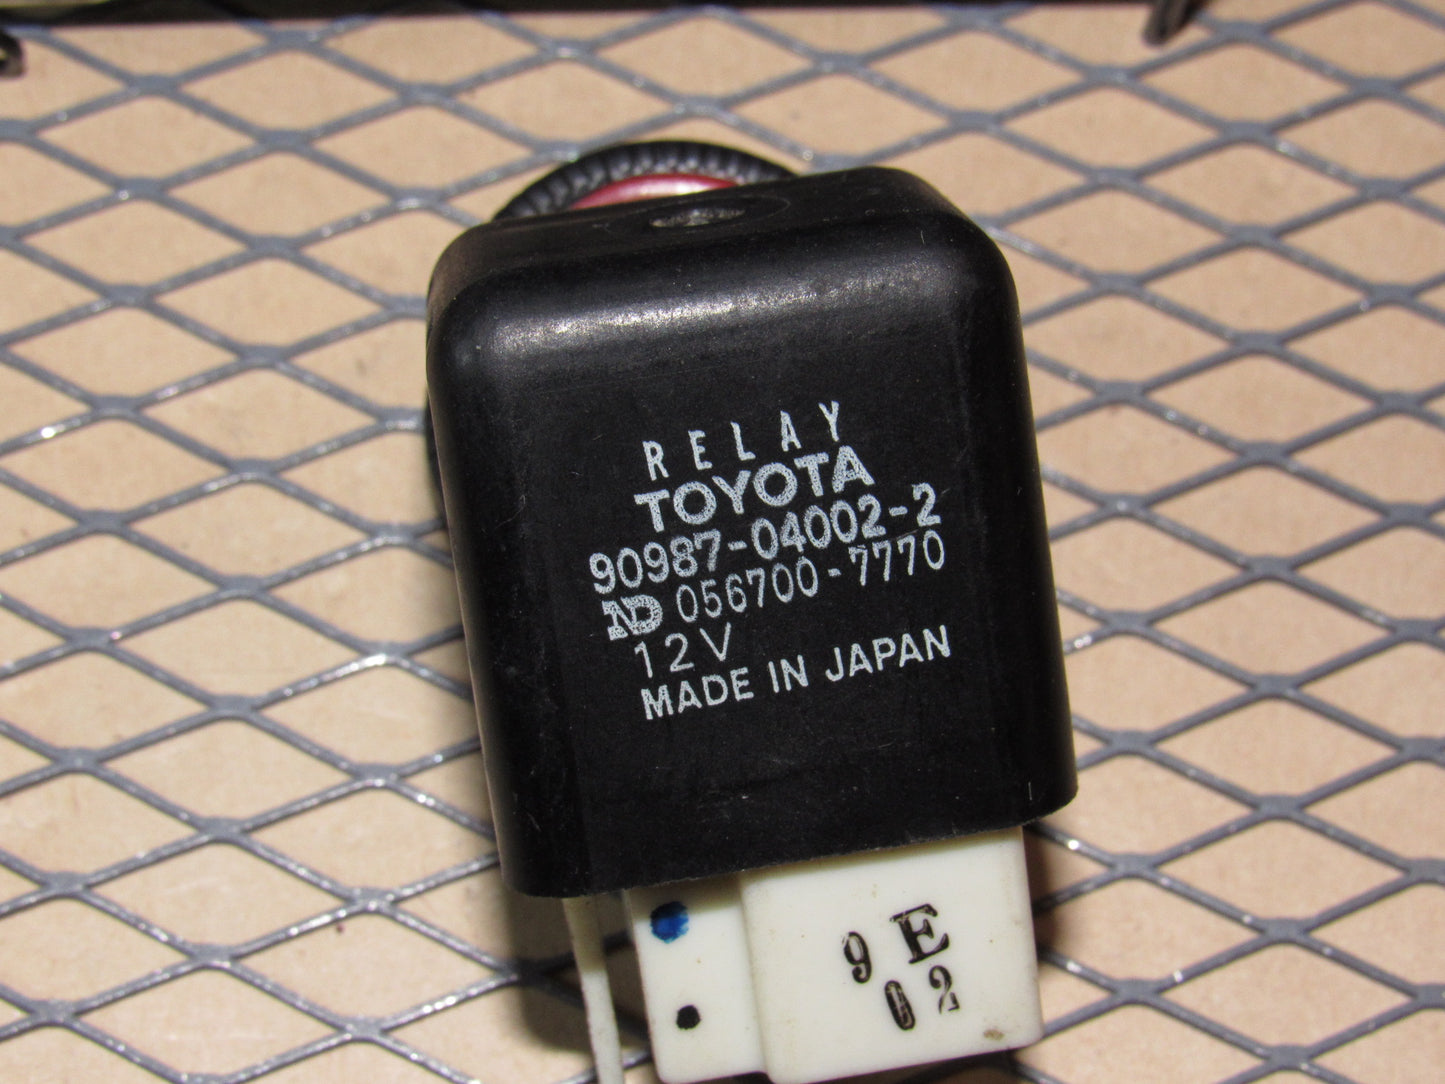 Toyota & Lexus Relay 90987-04002-2